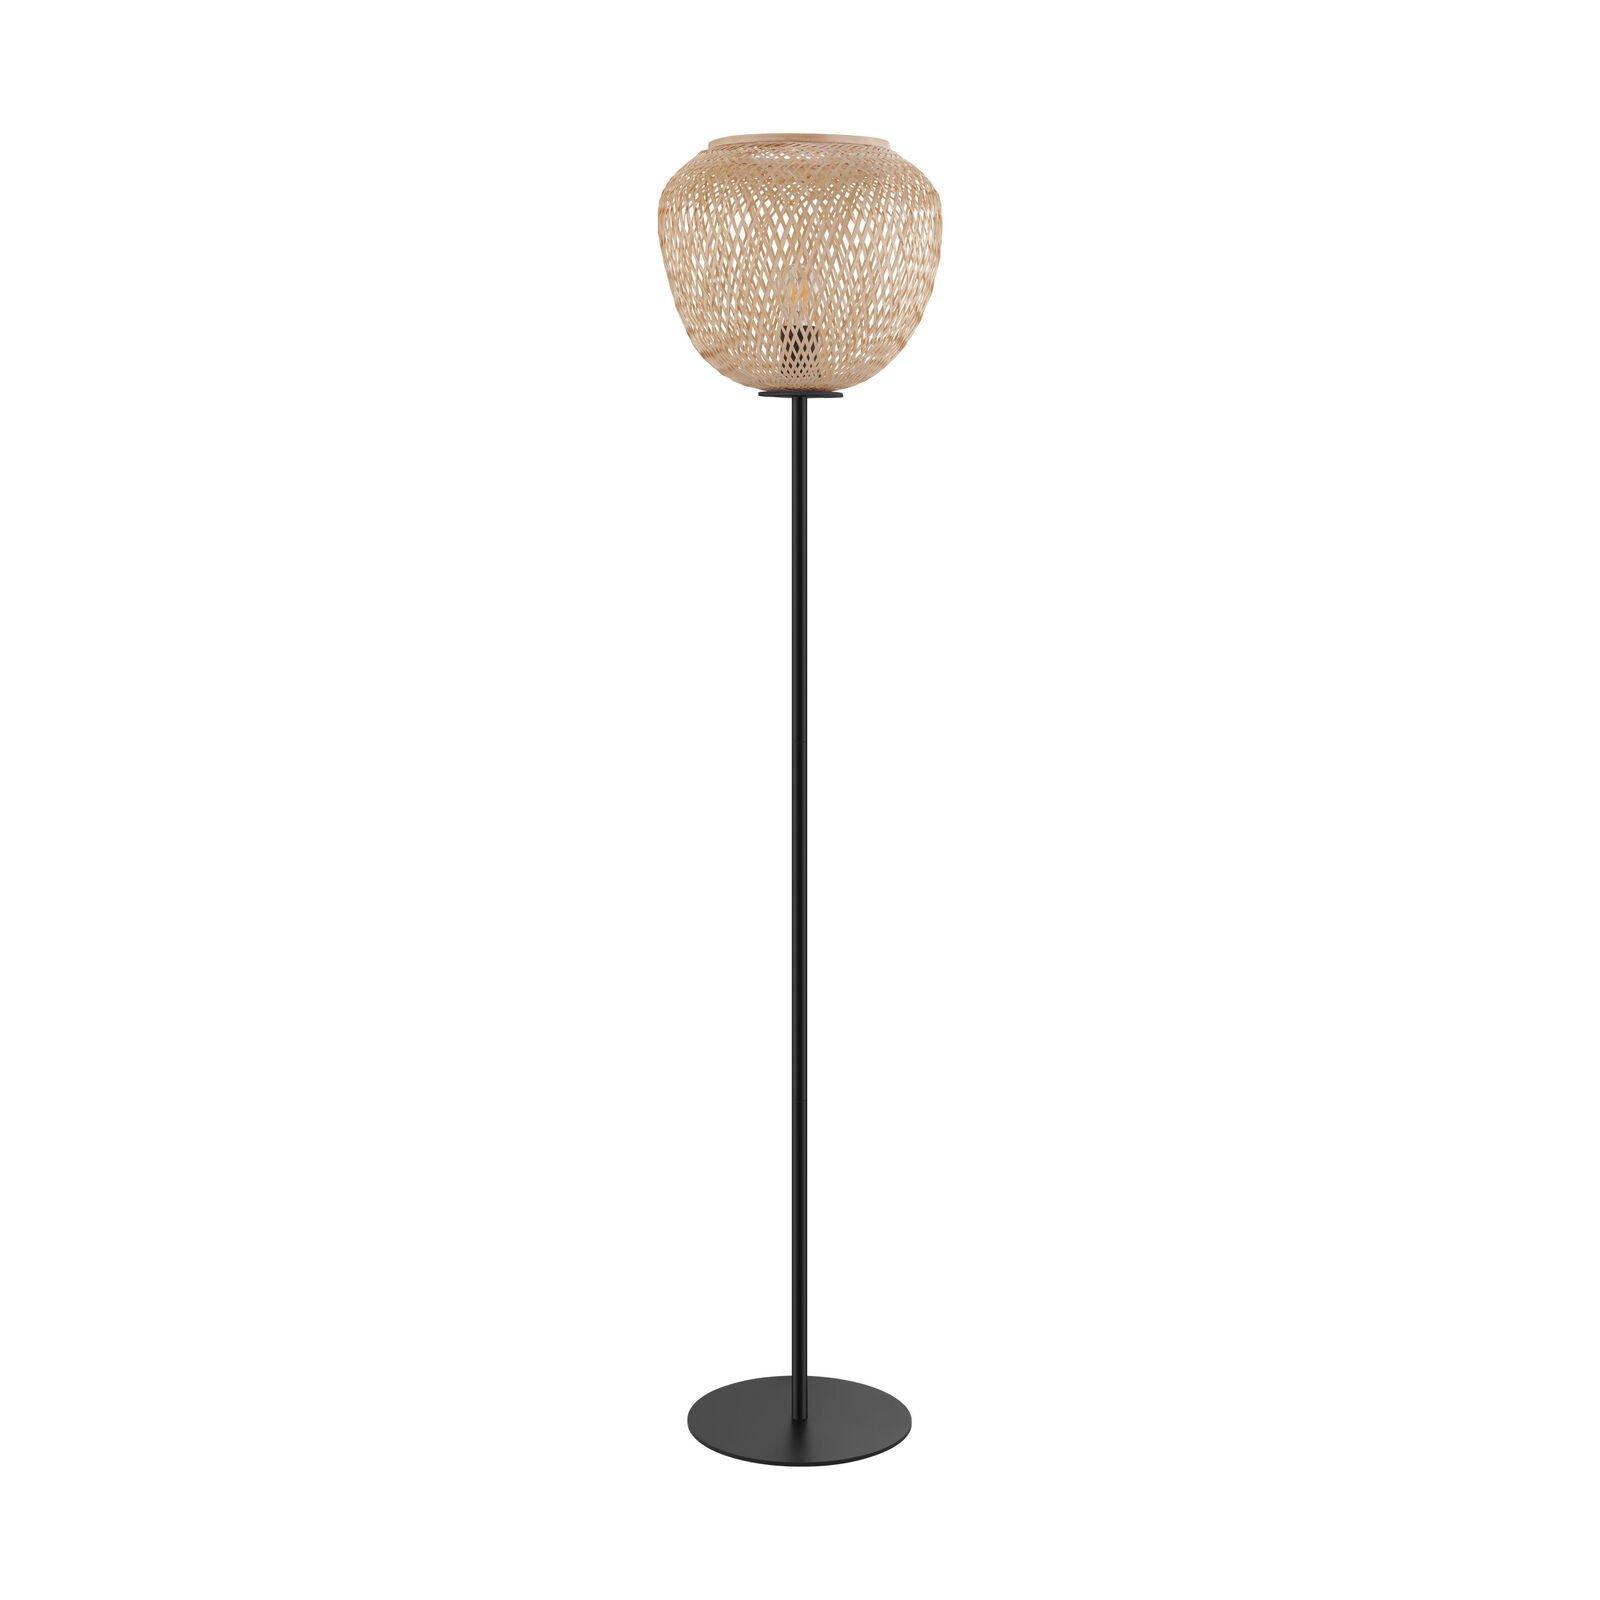 Standing Floor Lamp Light Black & Wicker 1 x 40W E27 Bulb Tall Living Room